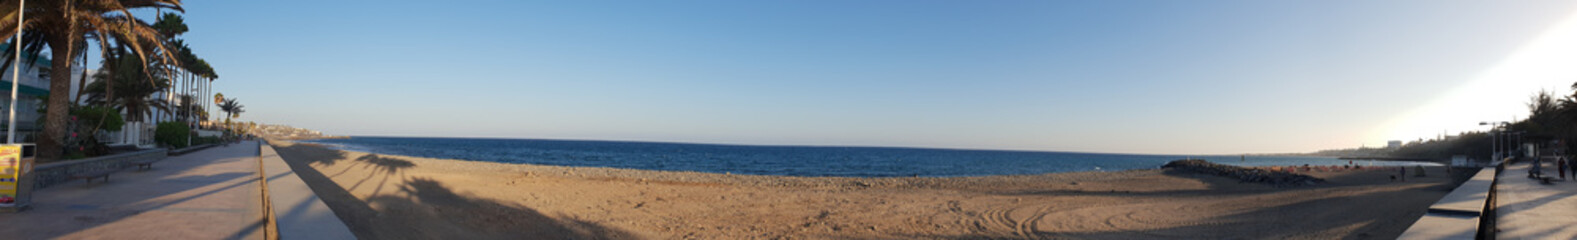 Playa de las Burras zwischen Playa del Inglés und San Agustín - Gran Canaria - Panorama 